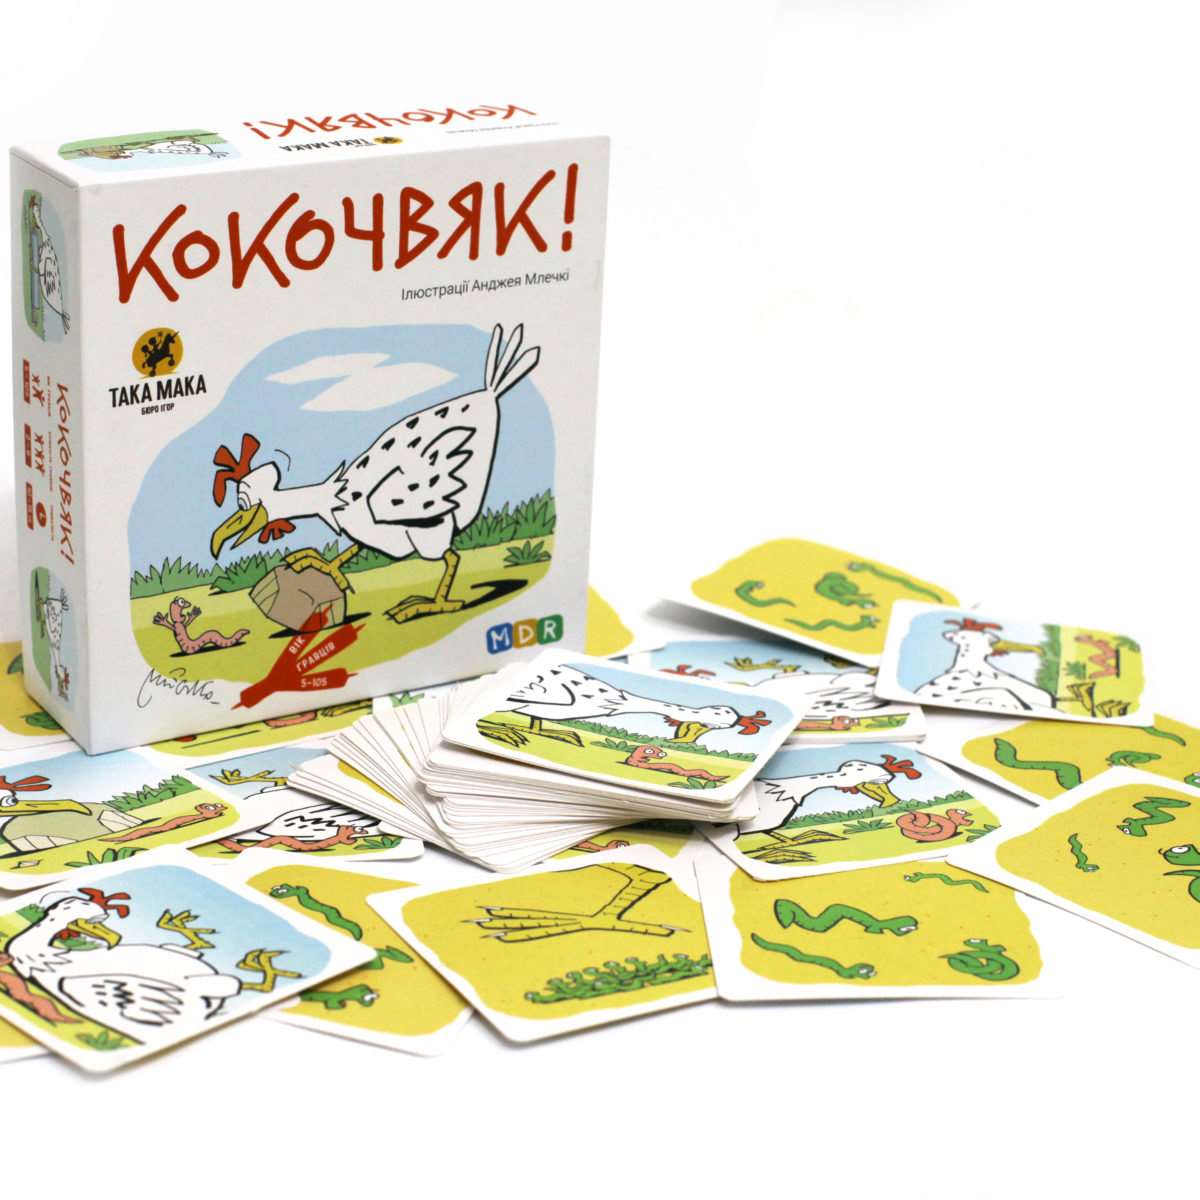 Настільна гра Кокочвяк, бренду Така Мака, для 2-6 гравців, час гри < 30хв. - 2 - KUBIX 